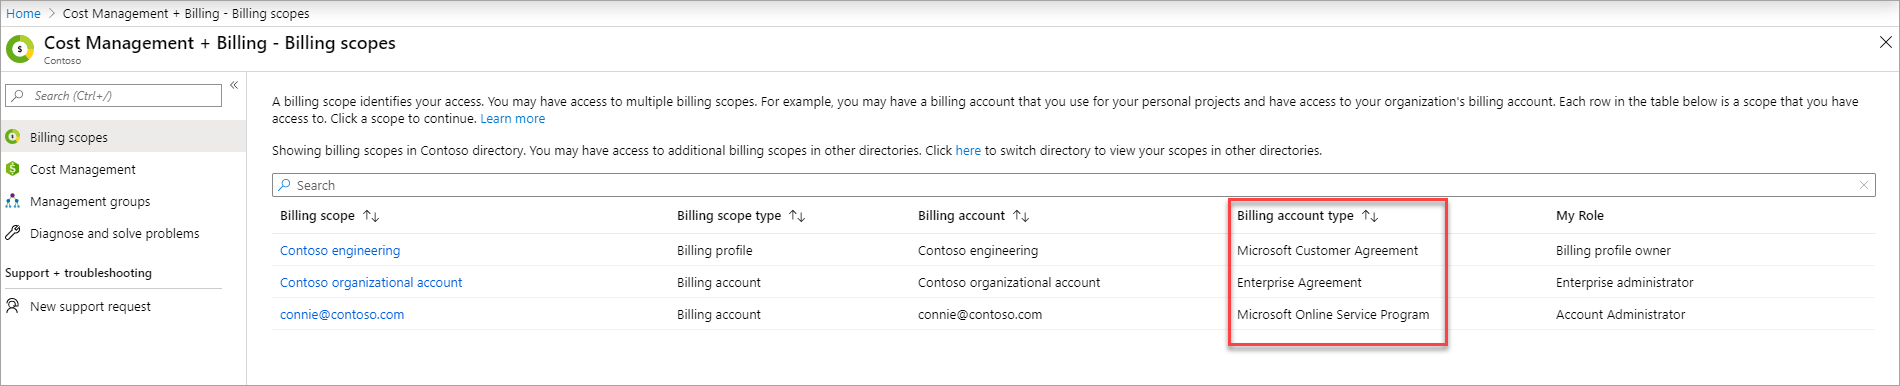 Schermopname met Microsoft-klantovereenkomst op de pagina met een lijst van factureringsaccounts